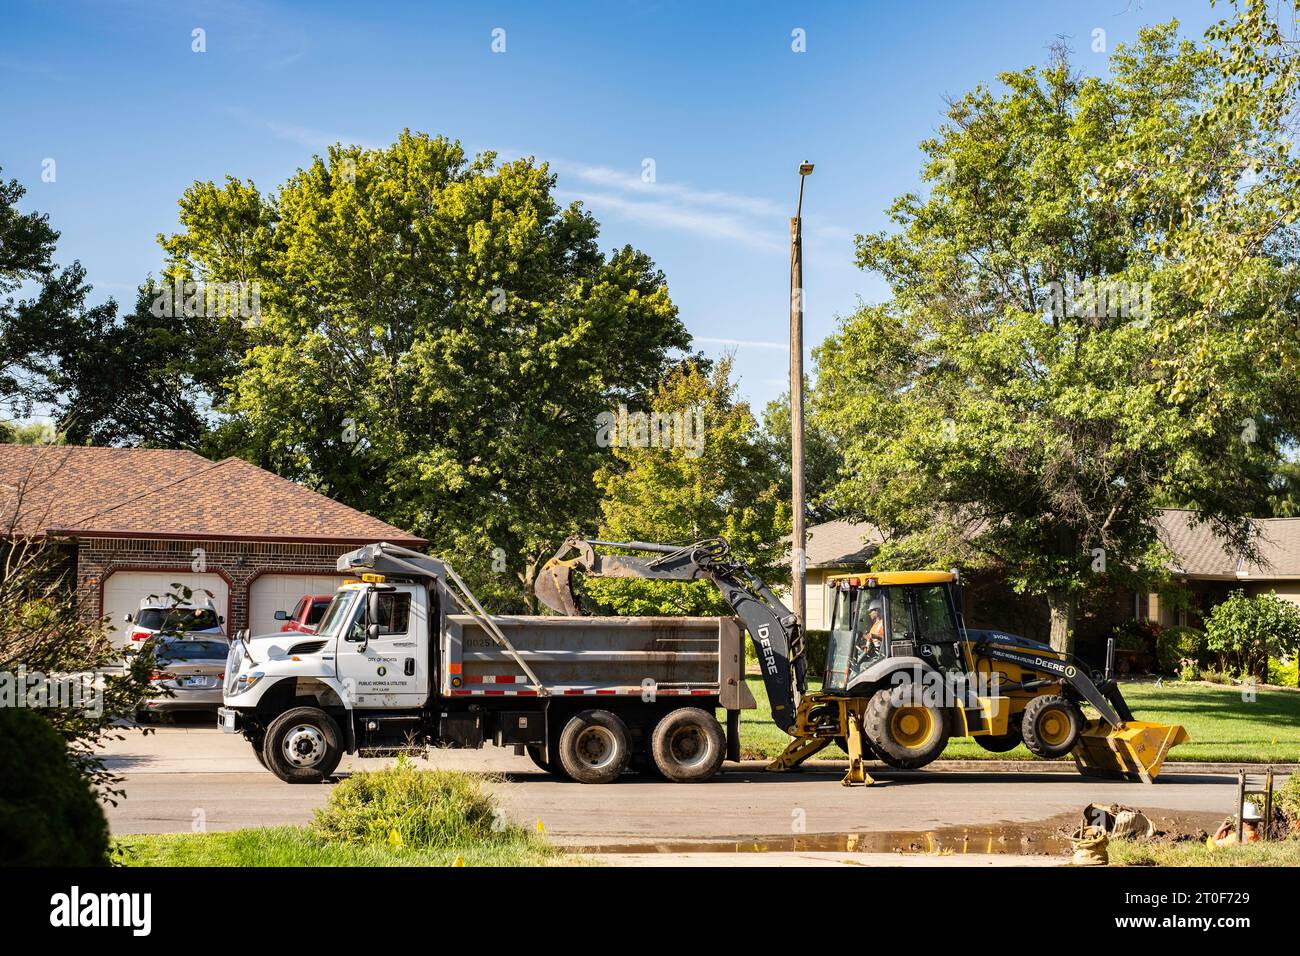 Un employé du département des eaux de Wichita Kansas creuse une conduite d'eau avec une pelle rétro John Deere avec un bulldozer dans un quartier urbain. Wichita, Kansas, États-Unis. Banque D'Images